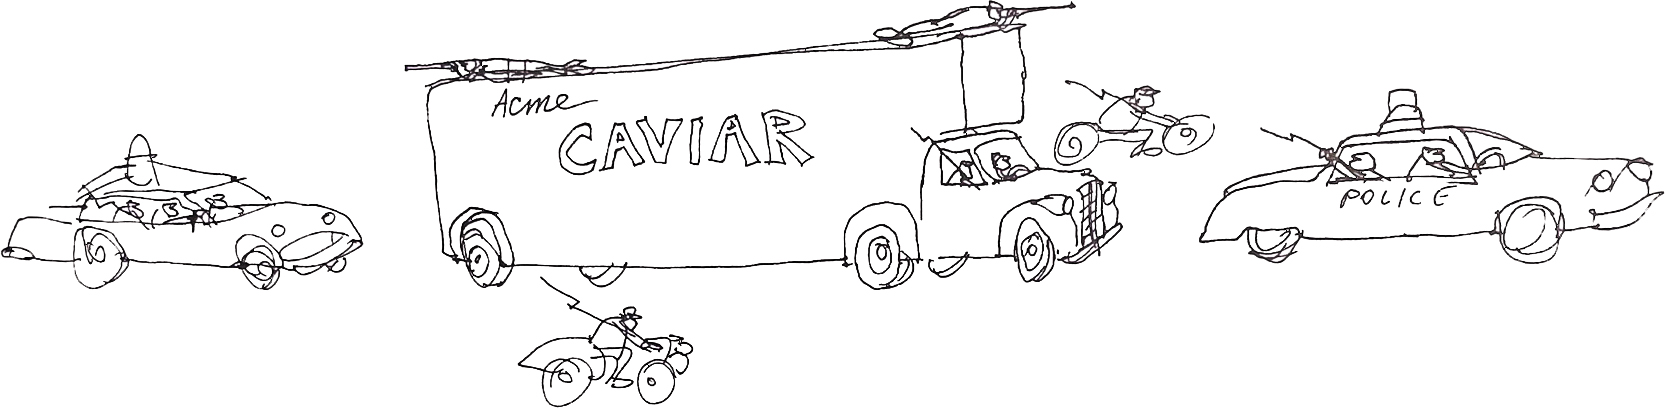 Caviar trucks cartoon by Dan Rattiner